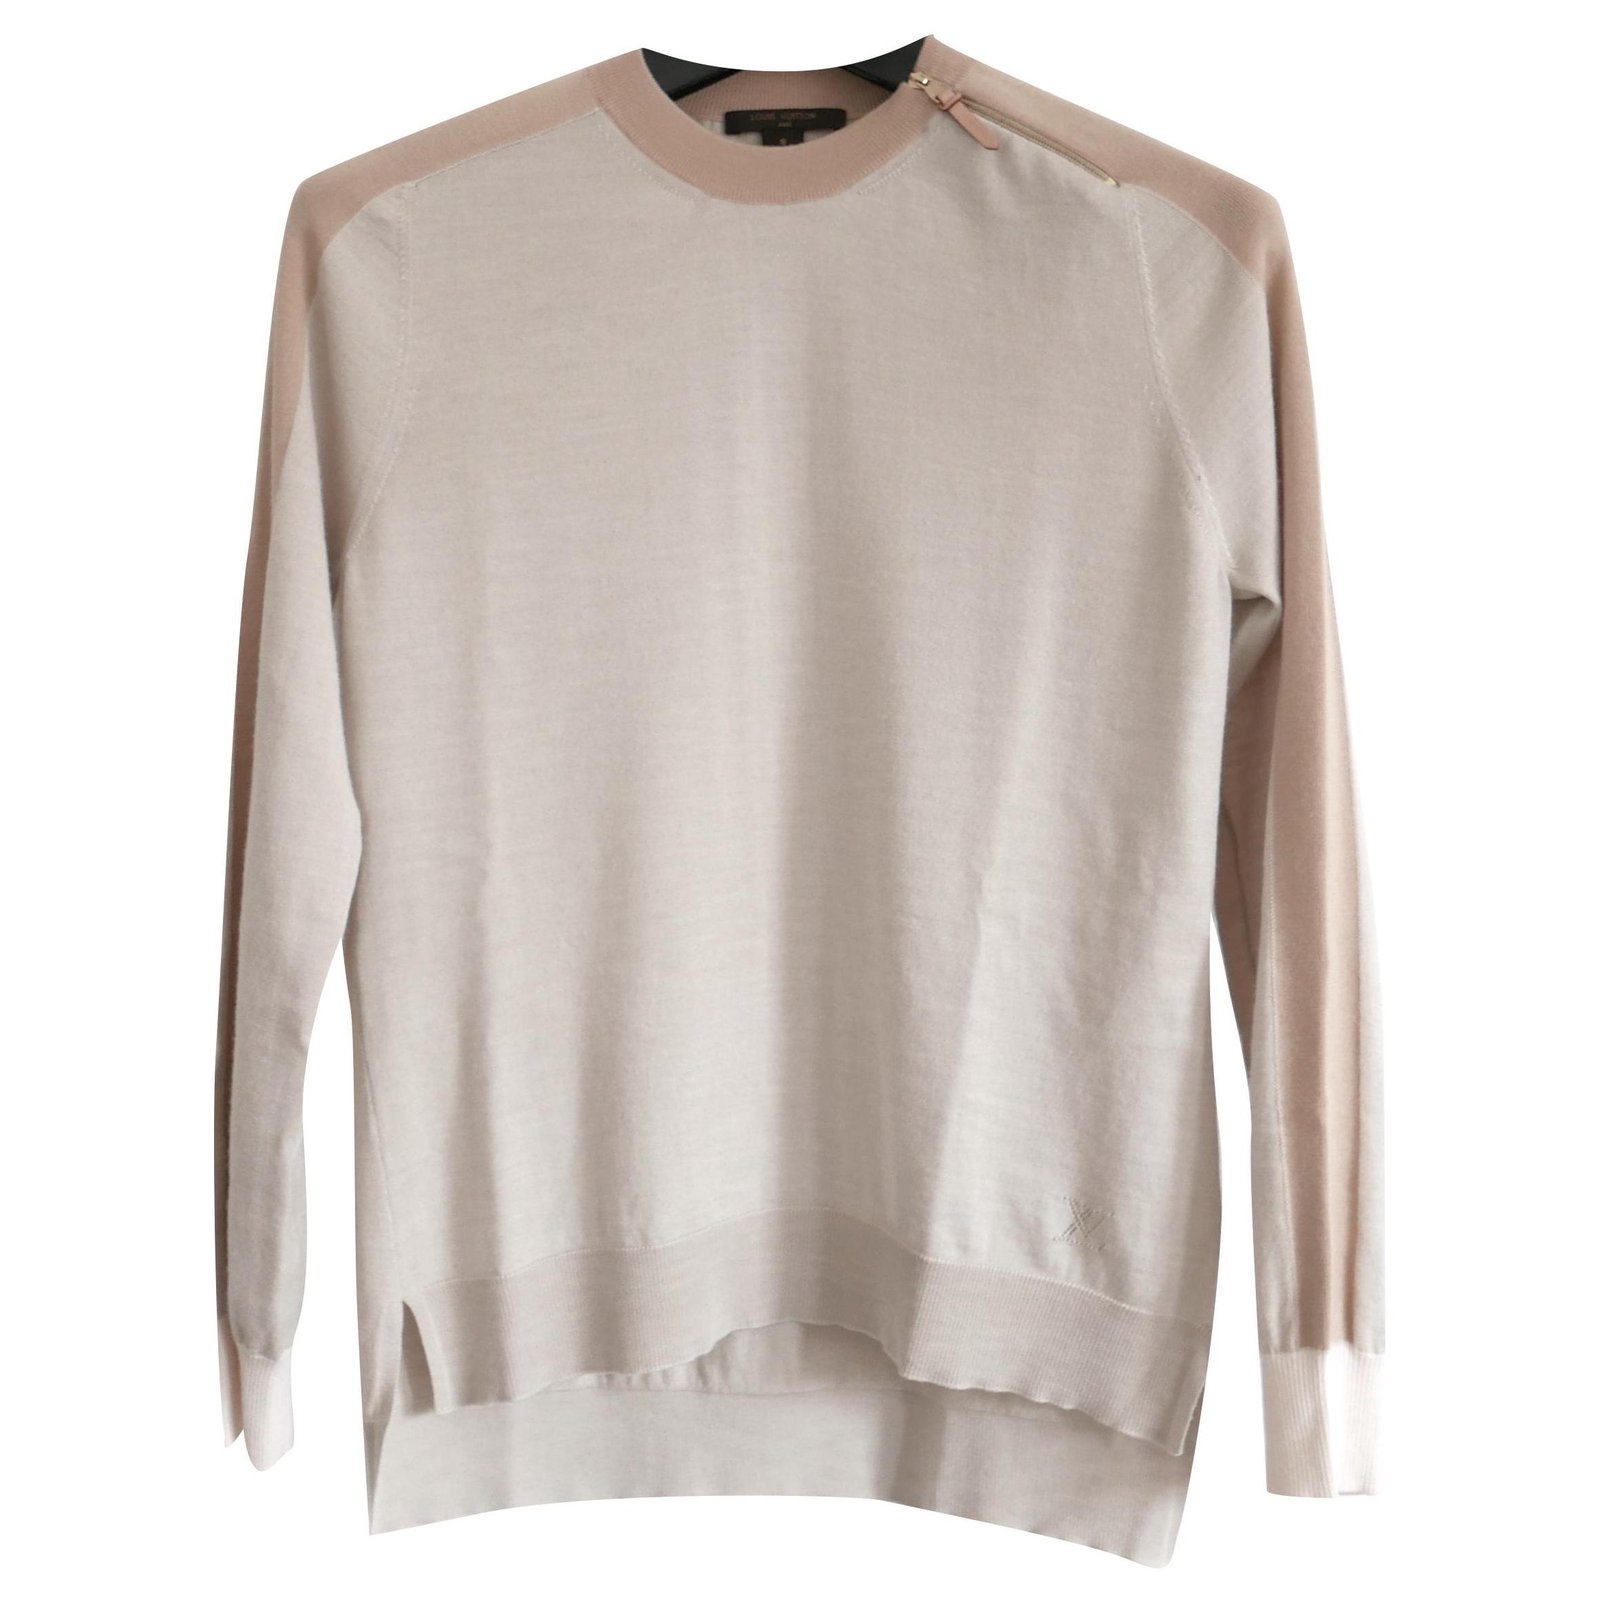 Louis Vuitton Sweatshirt in Mixed Cashmire